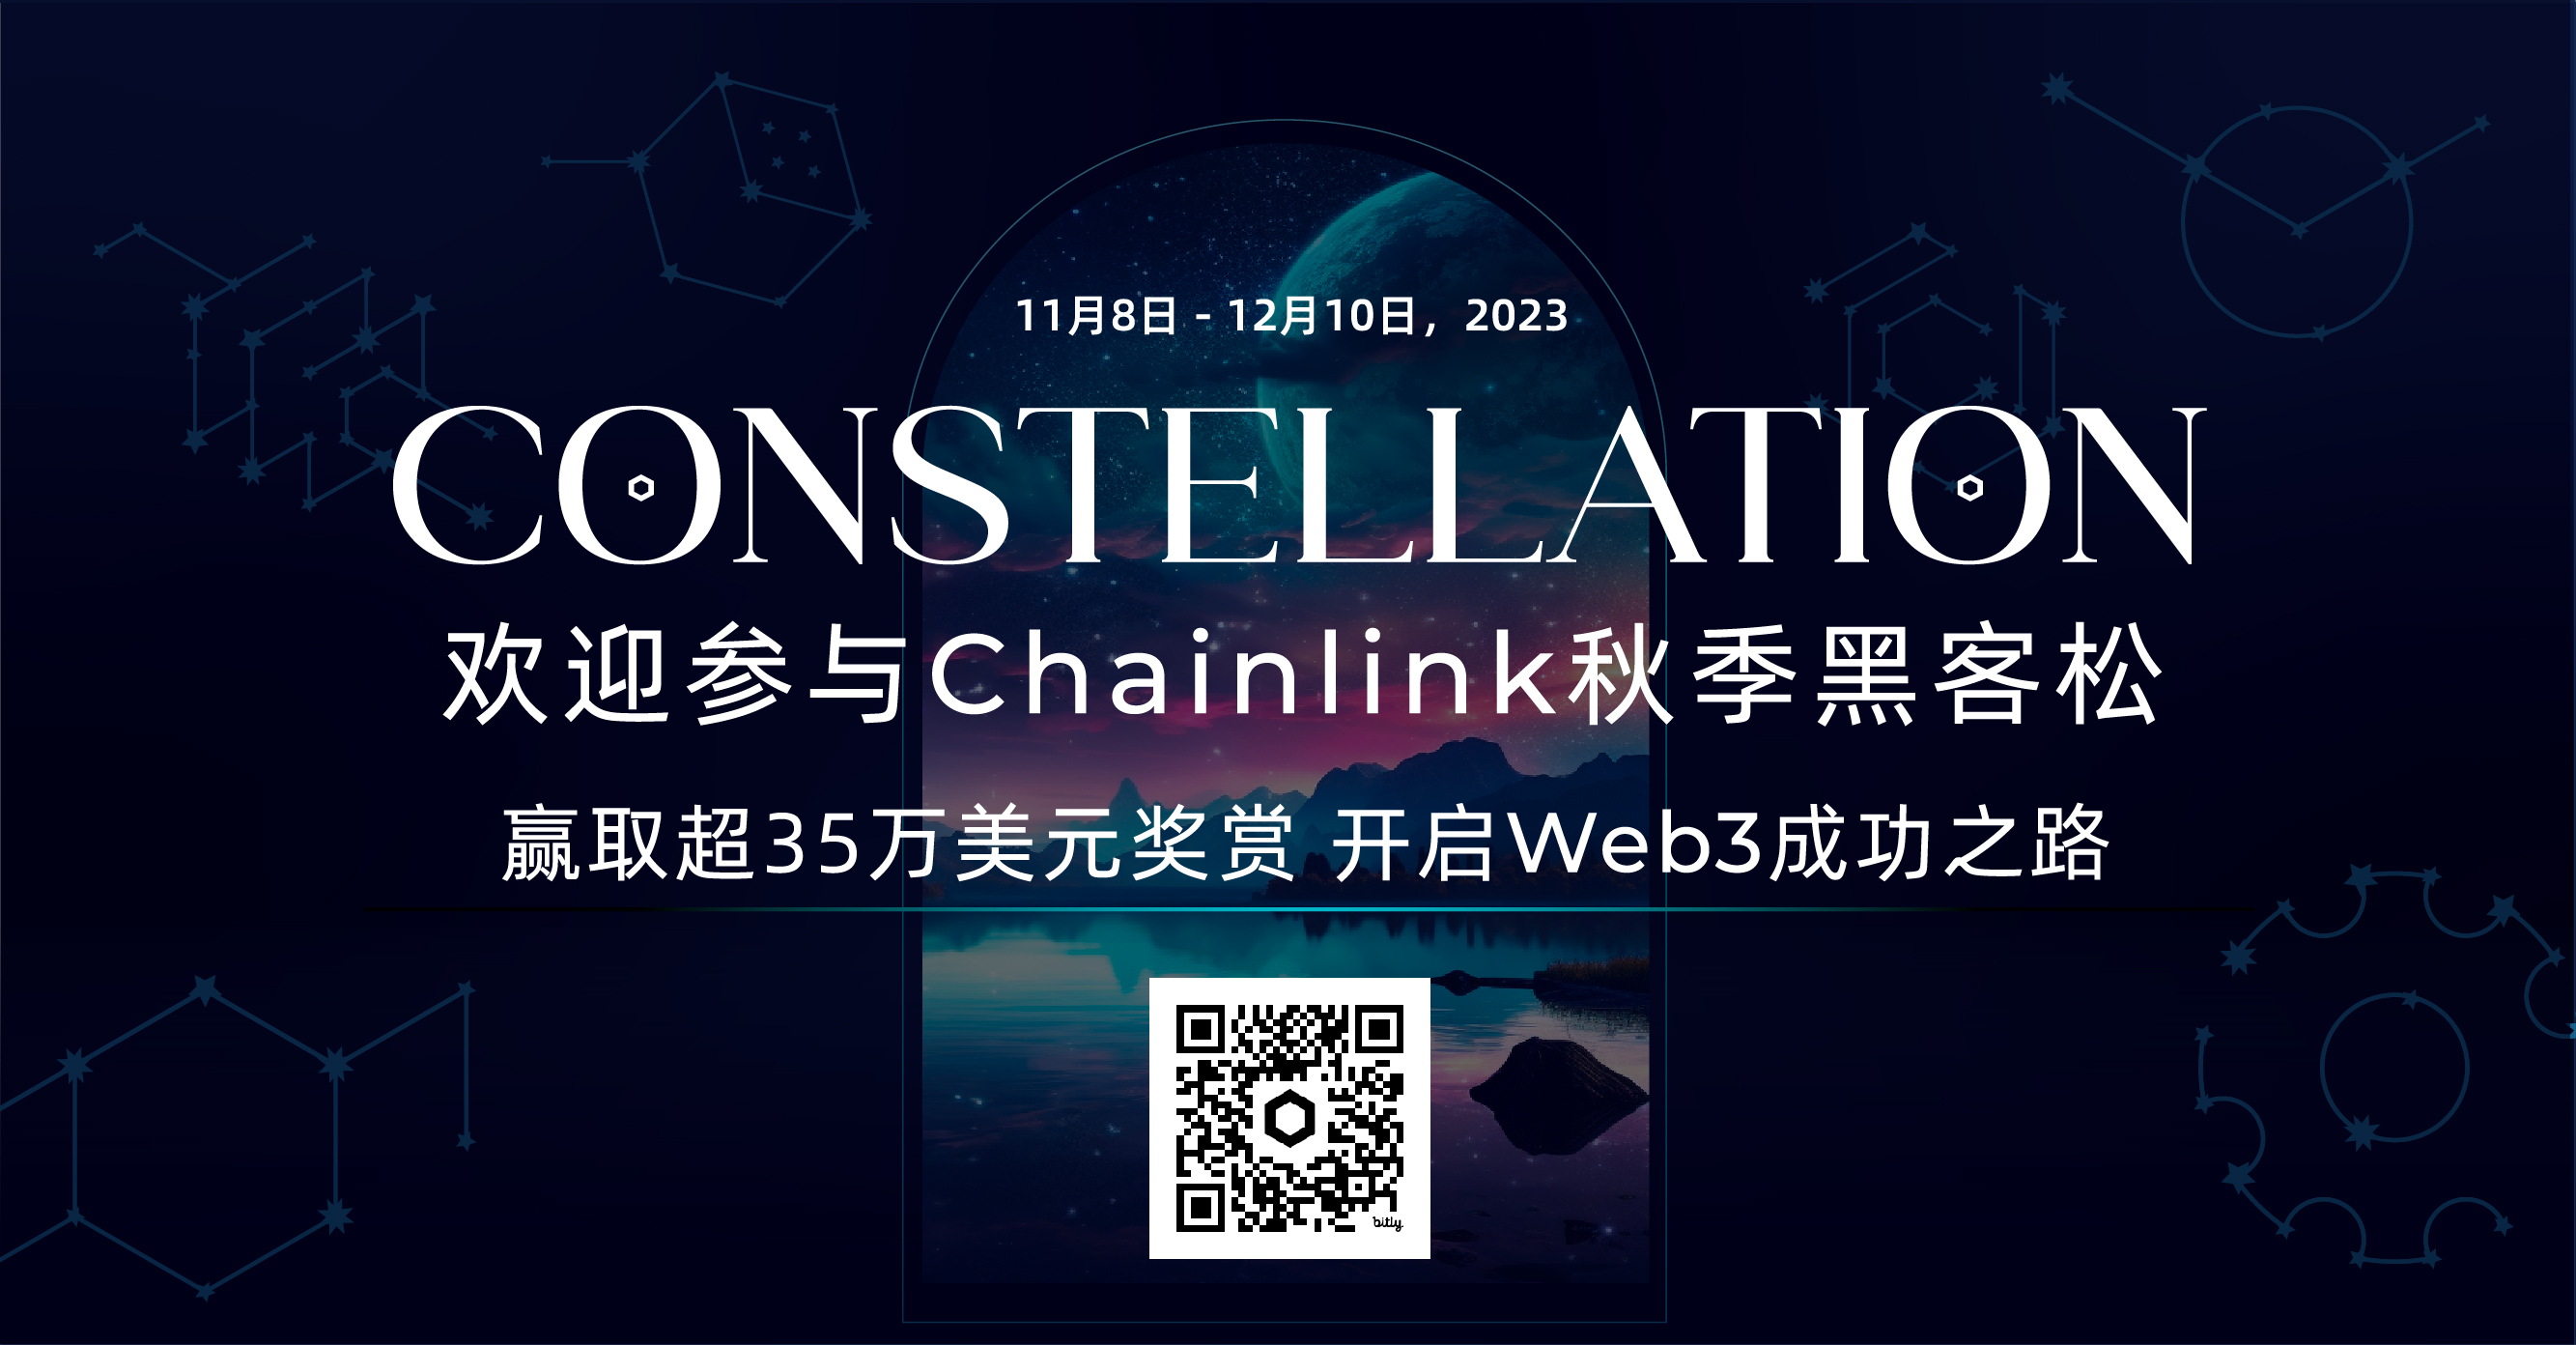 欢迎参与Chainlink秋季Constellation黑客松，赢取奖金，开启Web3成功之路